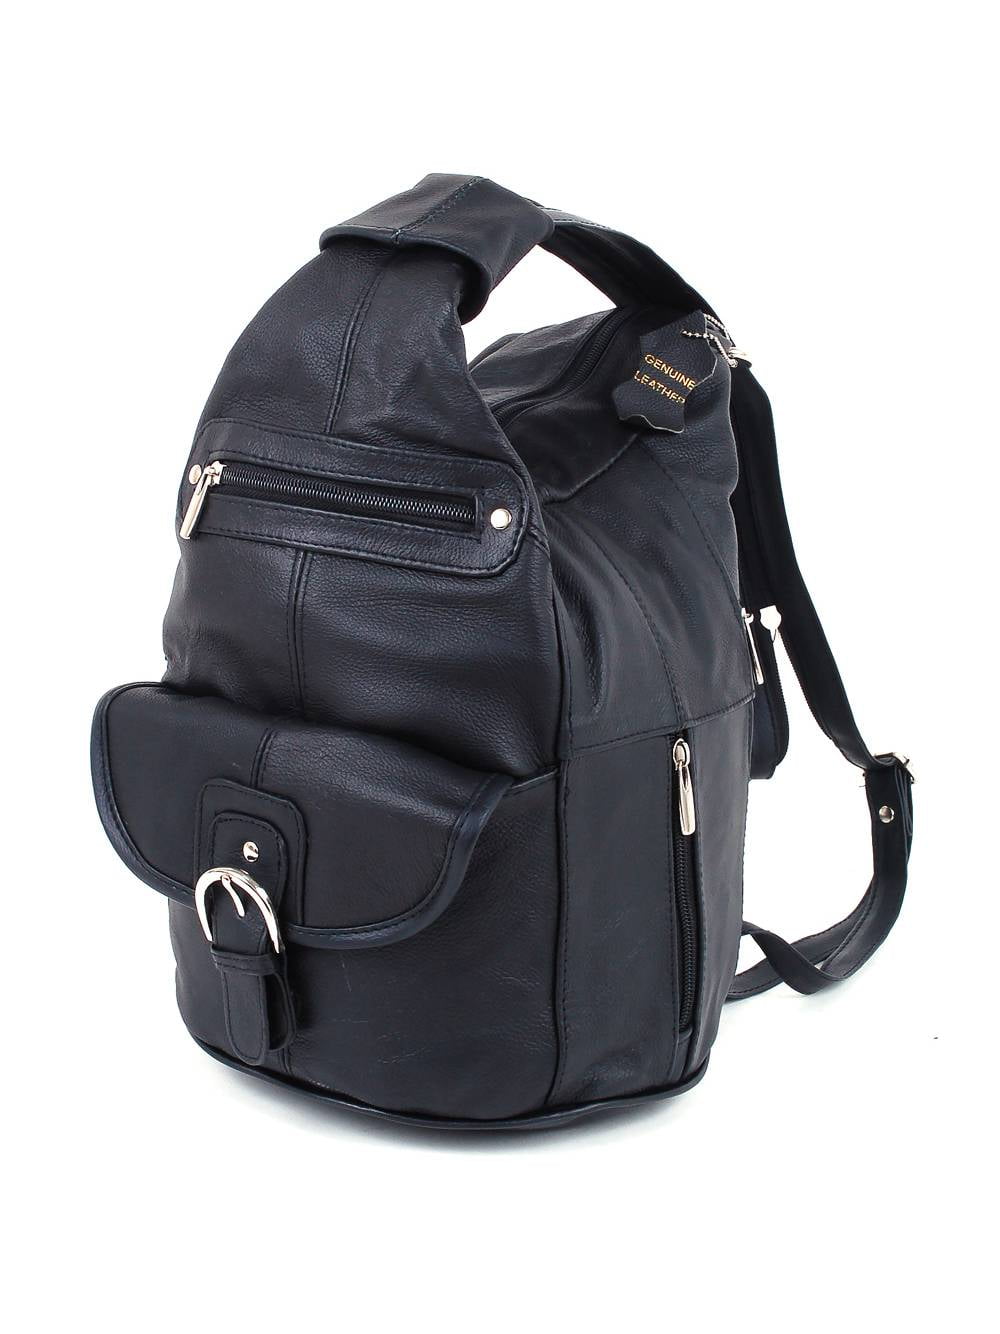 Womens Leather Backpack Purse Sling Shoulder Bag Handbag 3 in 1